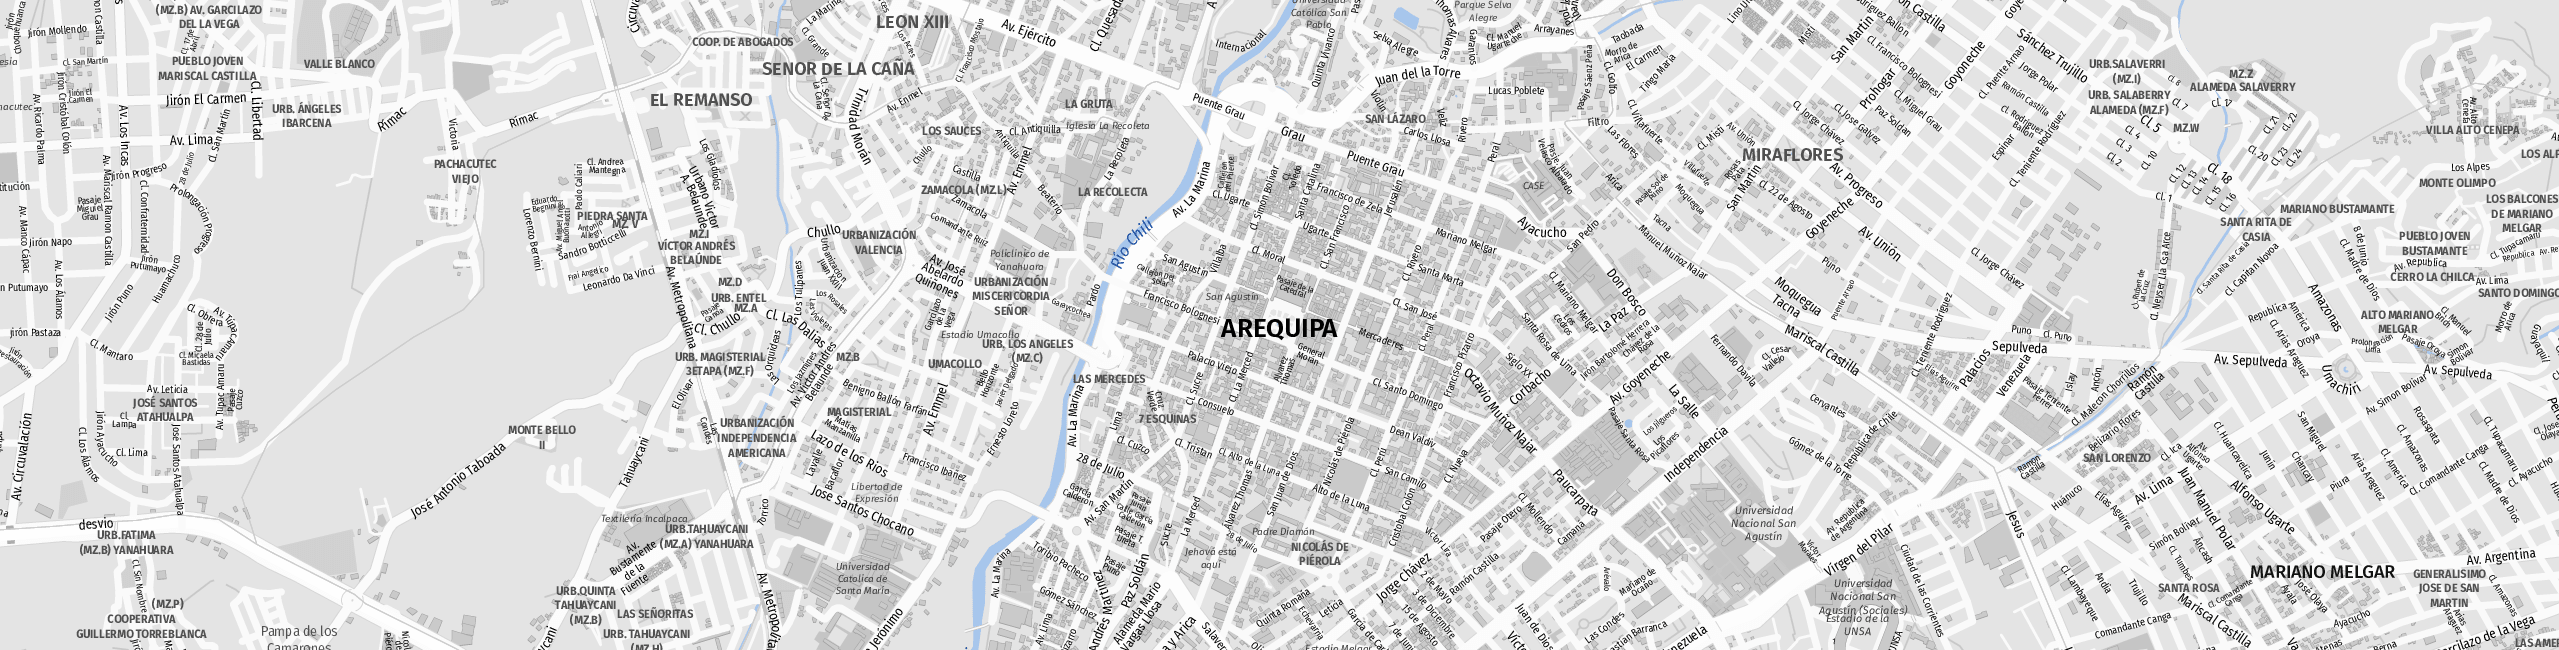 Stadtplan Arequipa zum Downloaden.